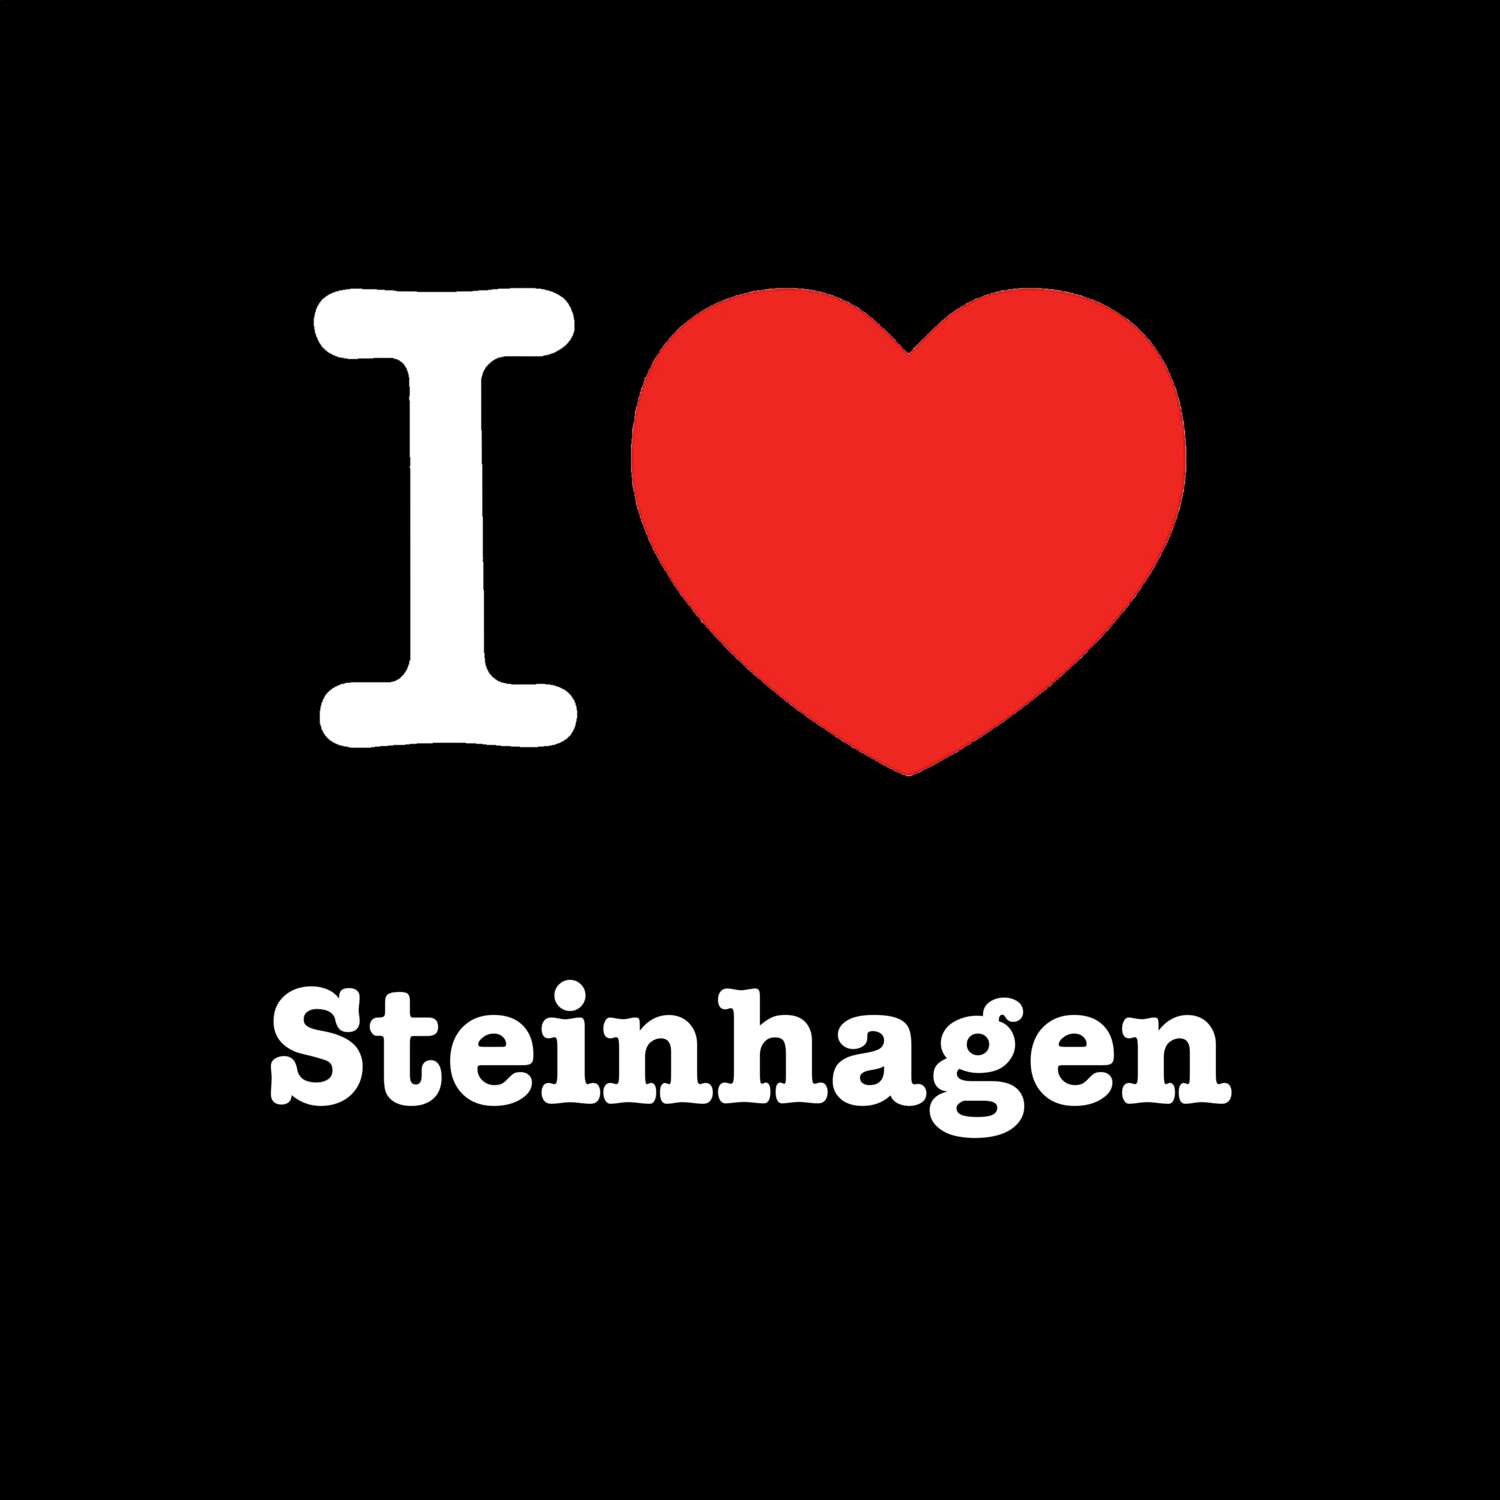 Steinhagen T-Shirt »I love«